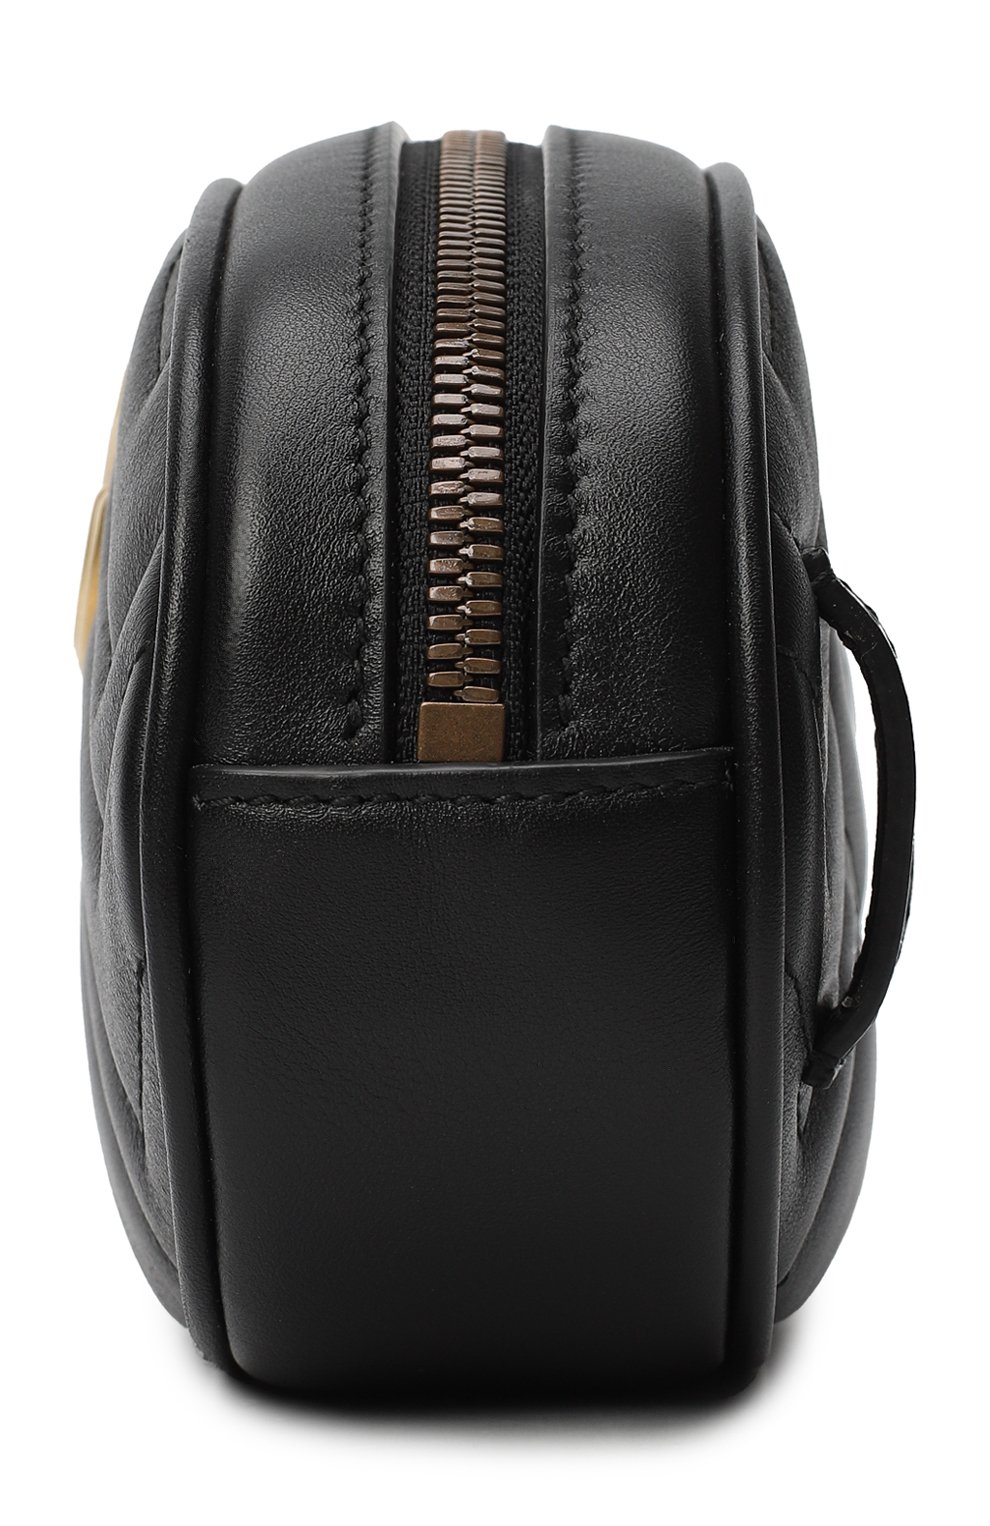 Поясная сумка GG Marmont | Gucci | Чёрный - 3